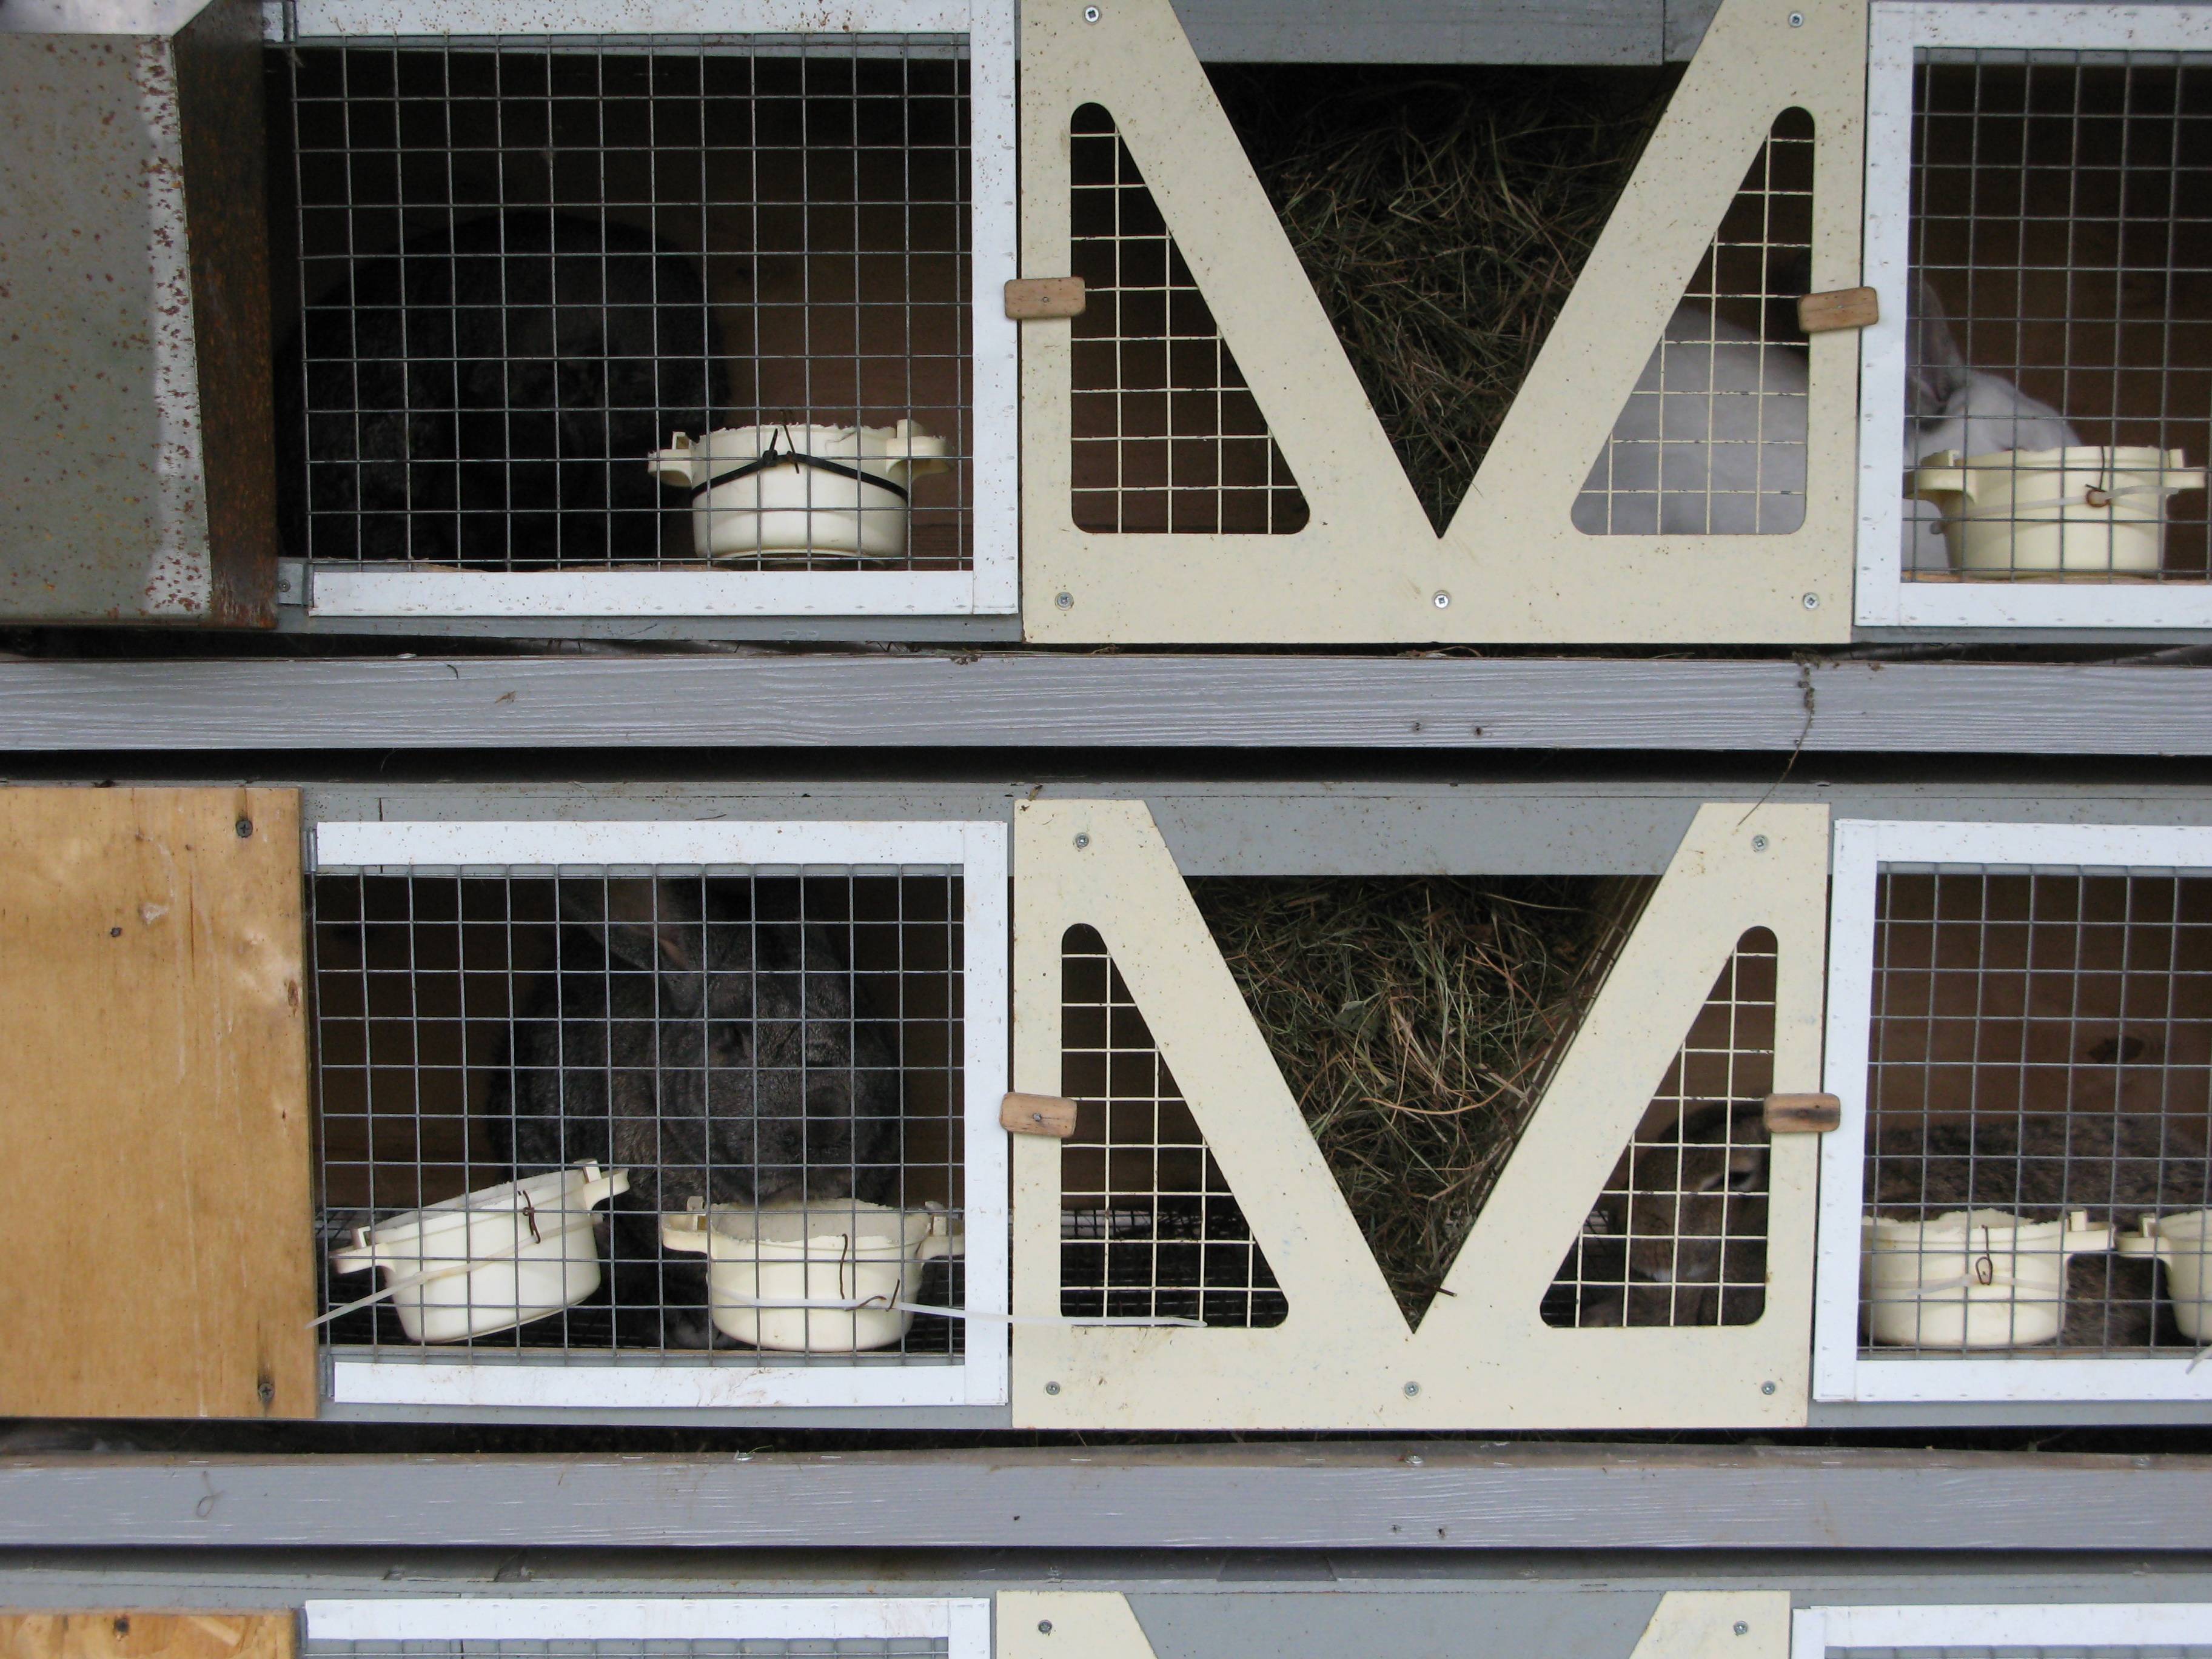 Разведение кроликов в домашних условиях для начинающих: содержание и породы